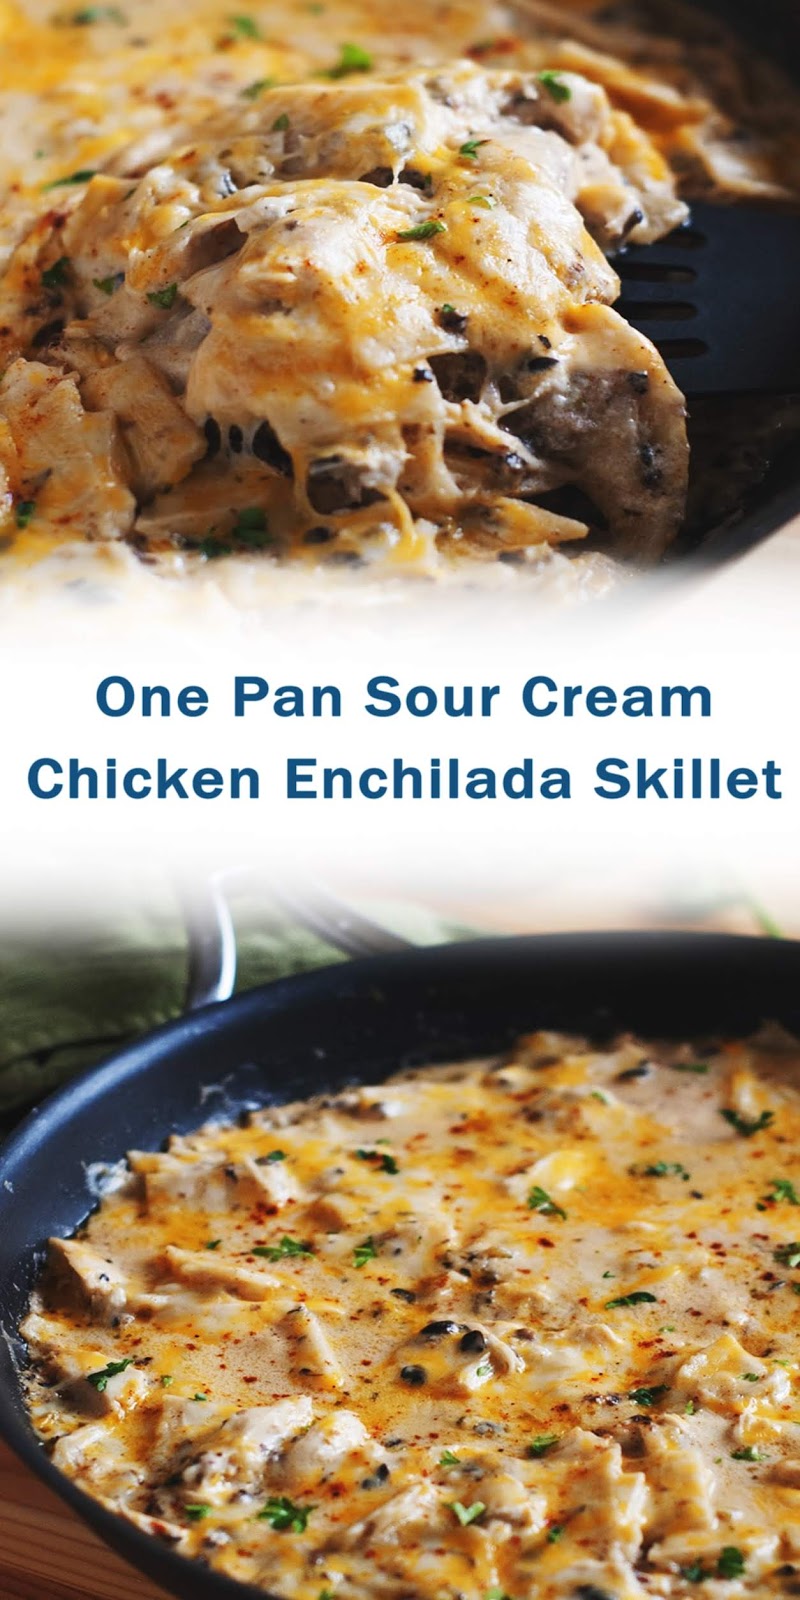 One Pan Sour Cream Chicken Enchilada Skillet